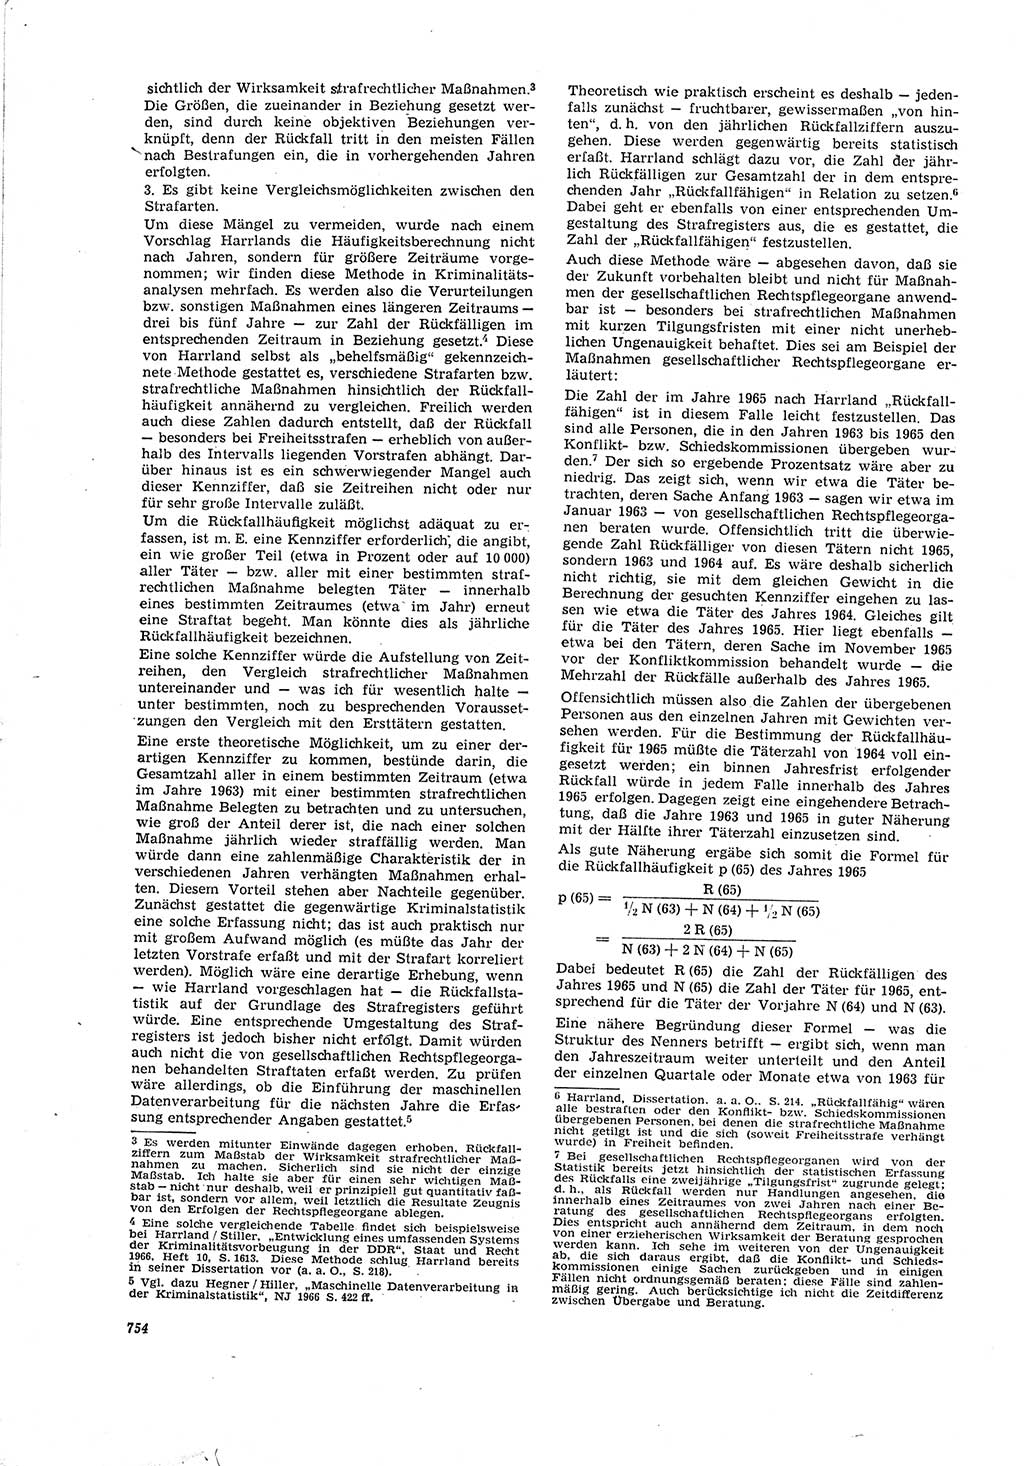 Neue Justiz (NJ), Zeitschrift für Recht und Rechtswissenschaft [Deutsche Demokratische Republik (DDR)], 20. Jahrgang 1966, Seite 754 (NJ DDR 1966, S. 754)